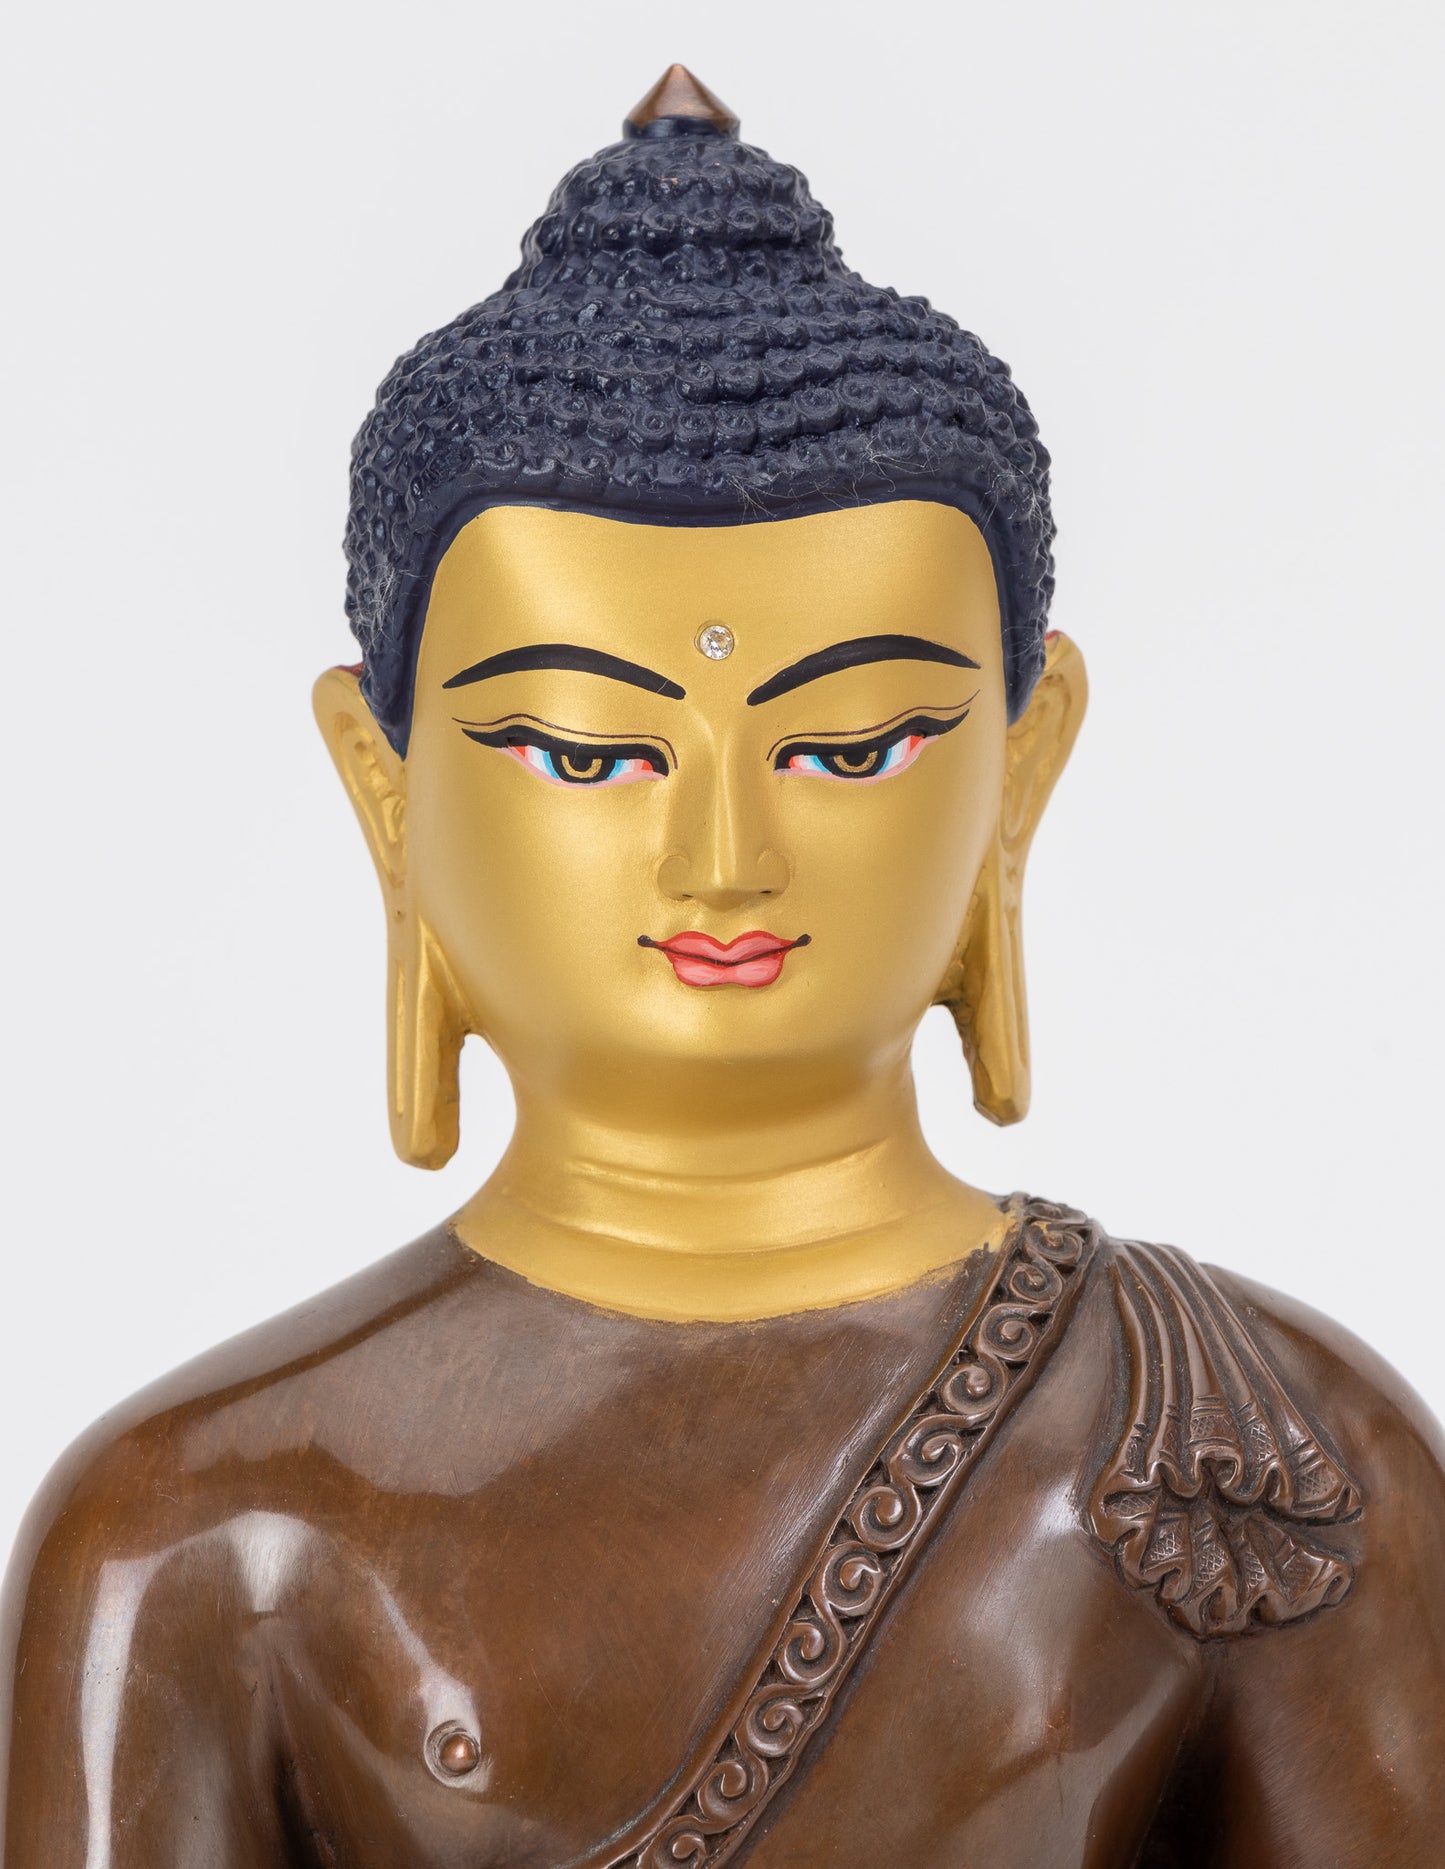 Shakyamuni Statue XIV